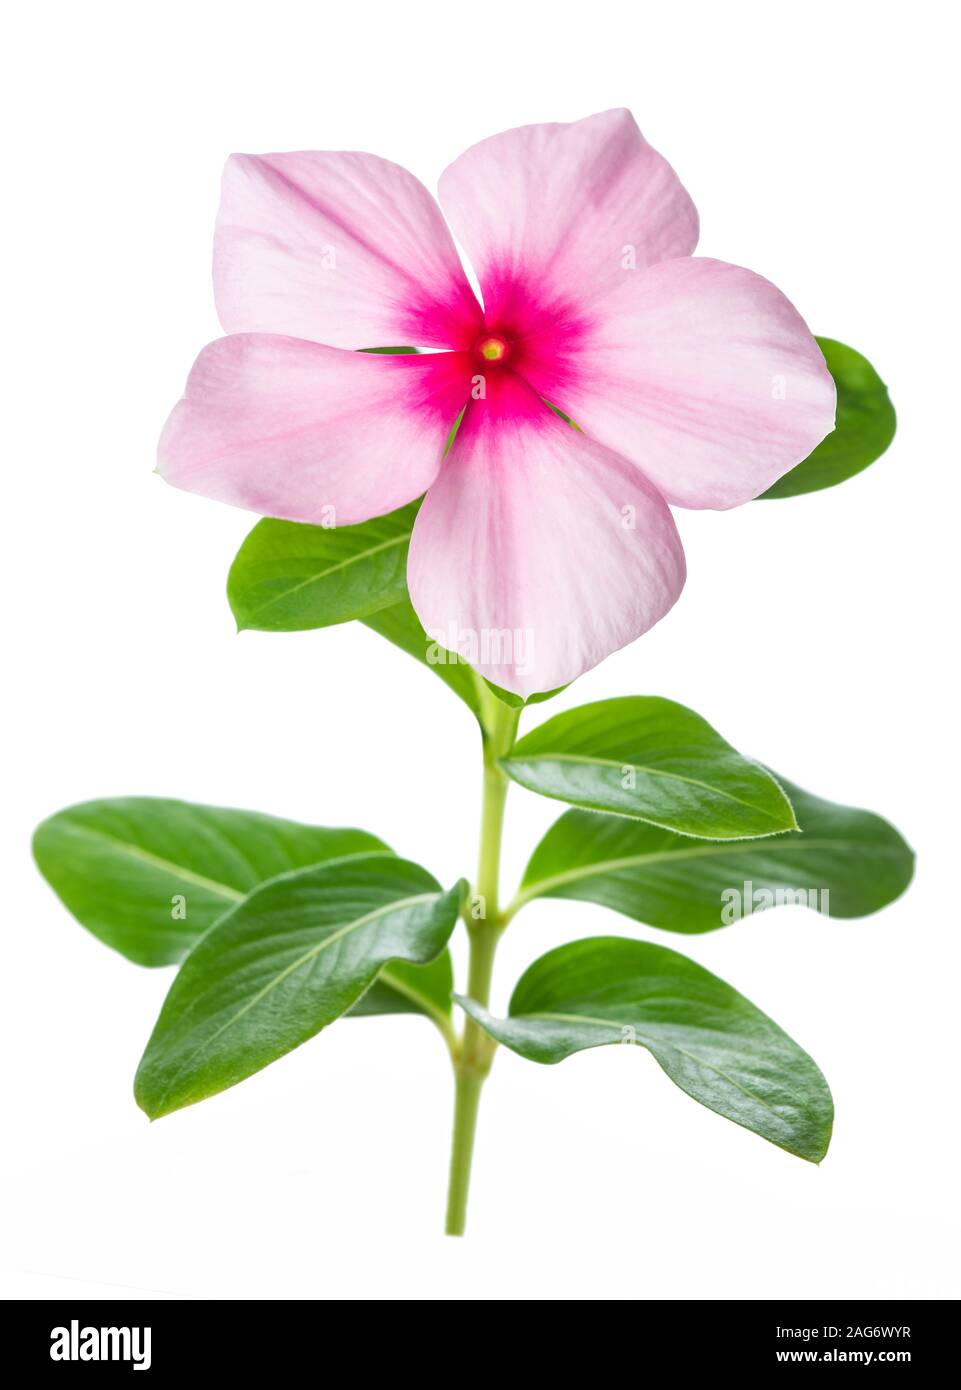 Madagascar periwinkle flower isolated on white background Stock Photo